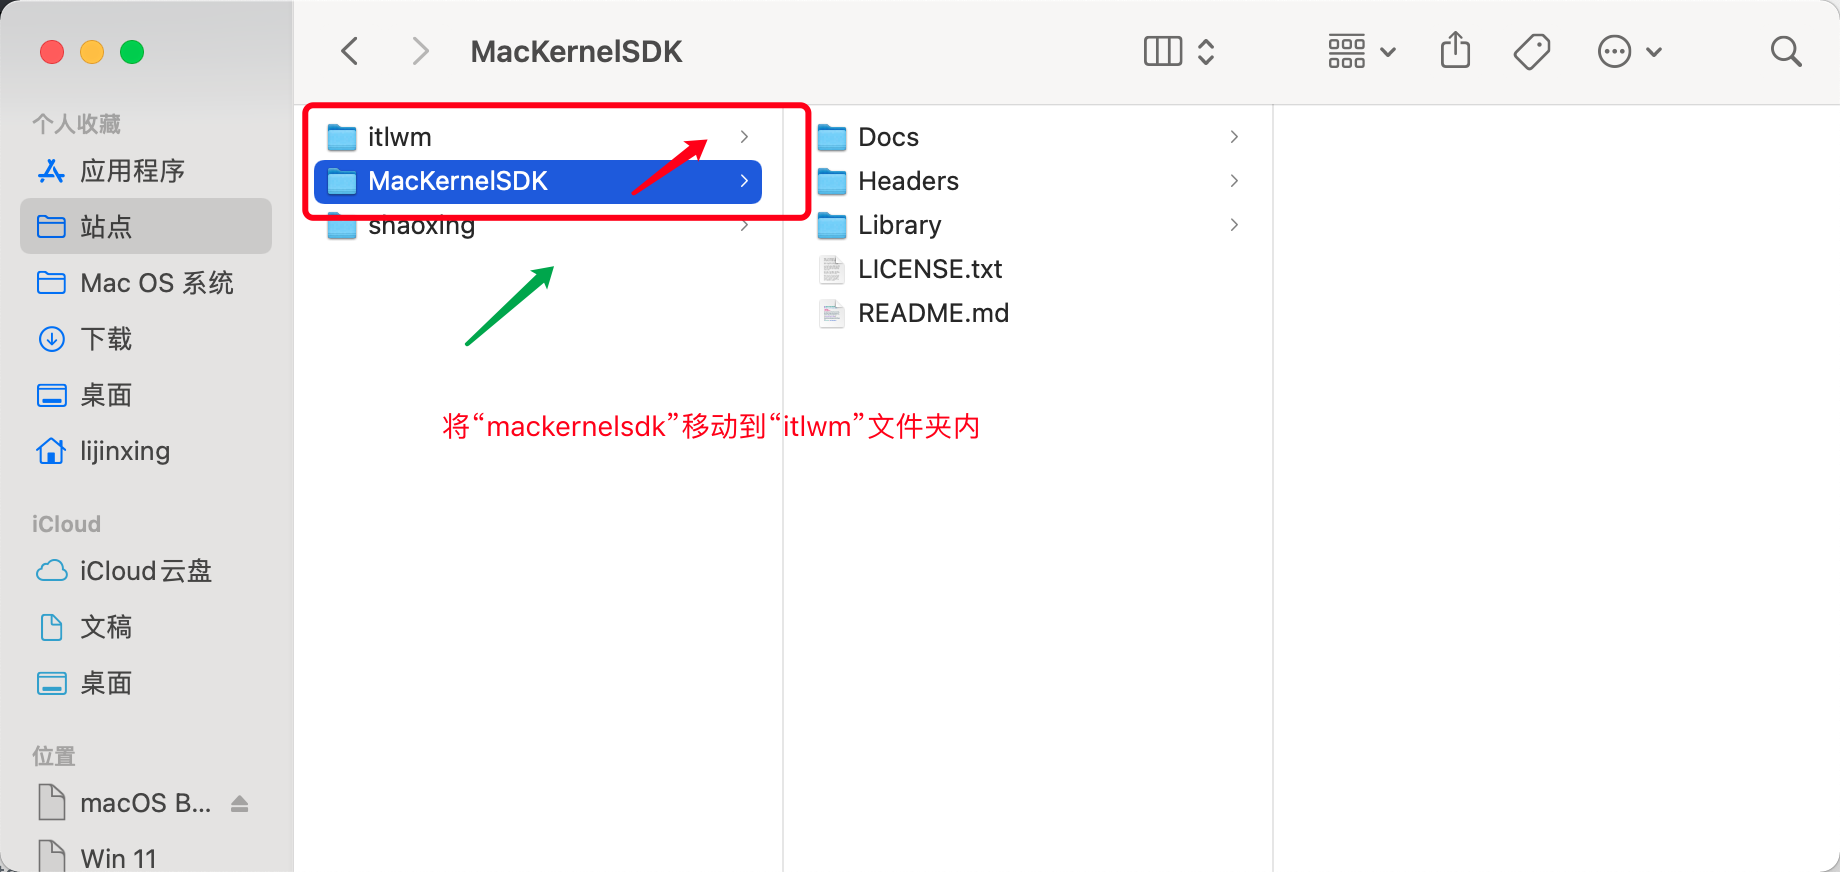 找到GitHub目录，将 “MacKernelSDK ” 移动至“itlwm ” 文件夹下。